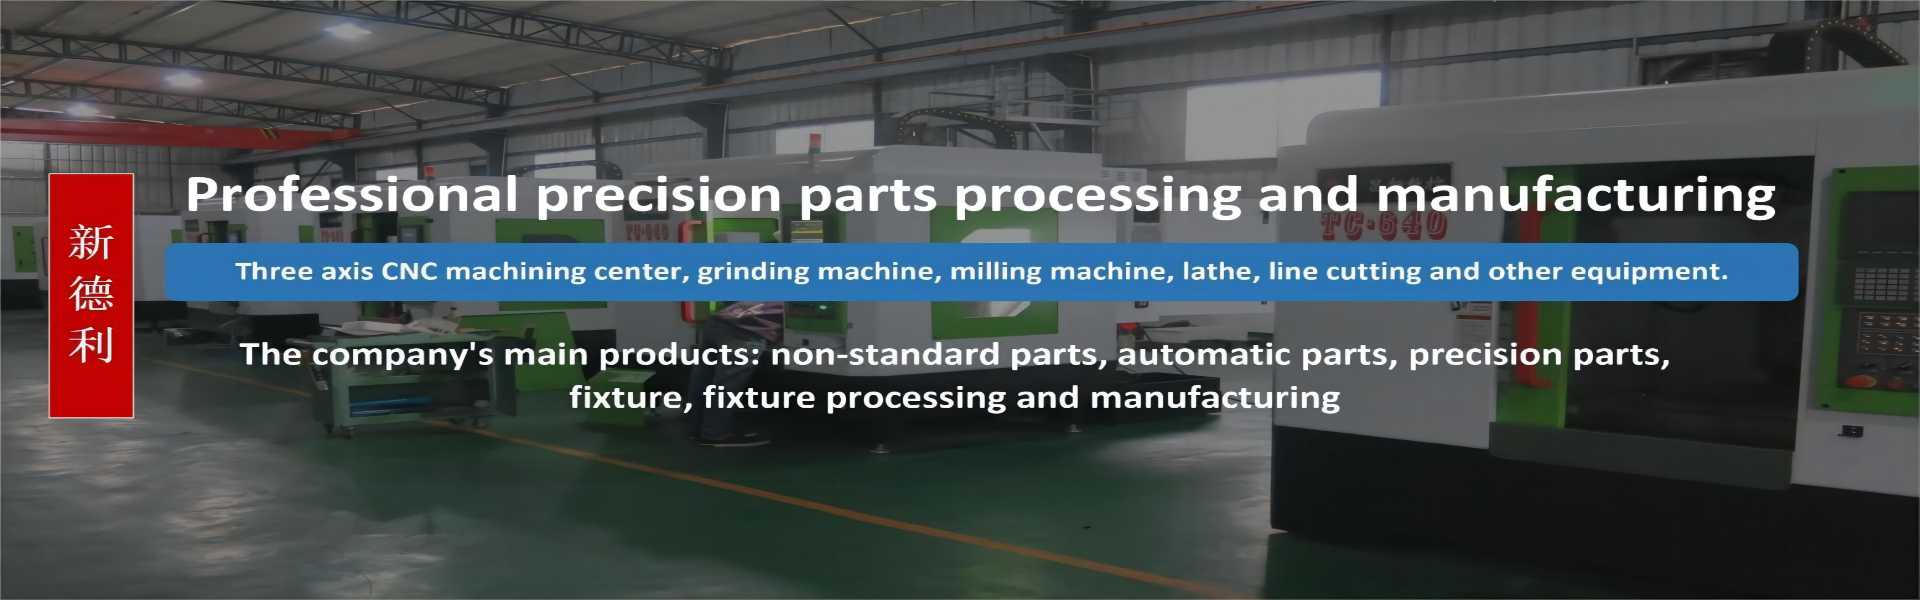 Prelucrarea pieselornon-standard, procesarea automată a pieselor, procesarea pieselor mecanice,Dongguan Xindeli Technology Co., LTD